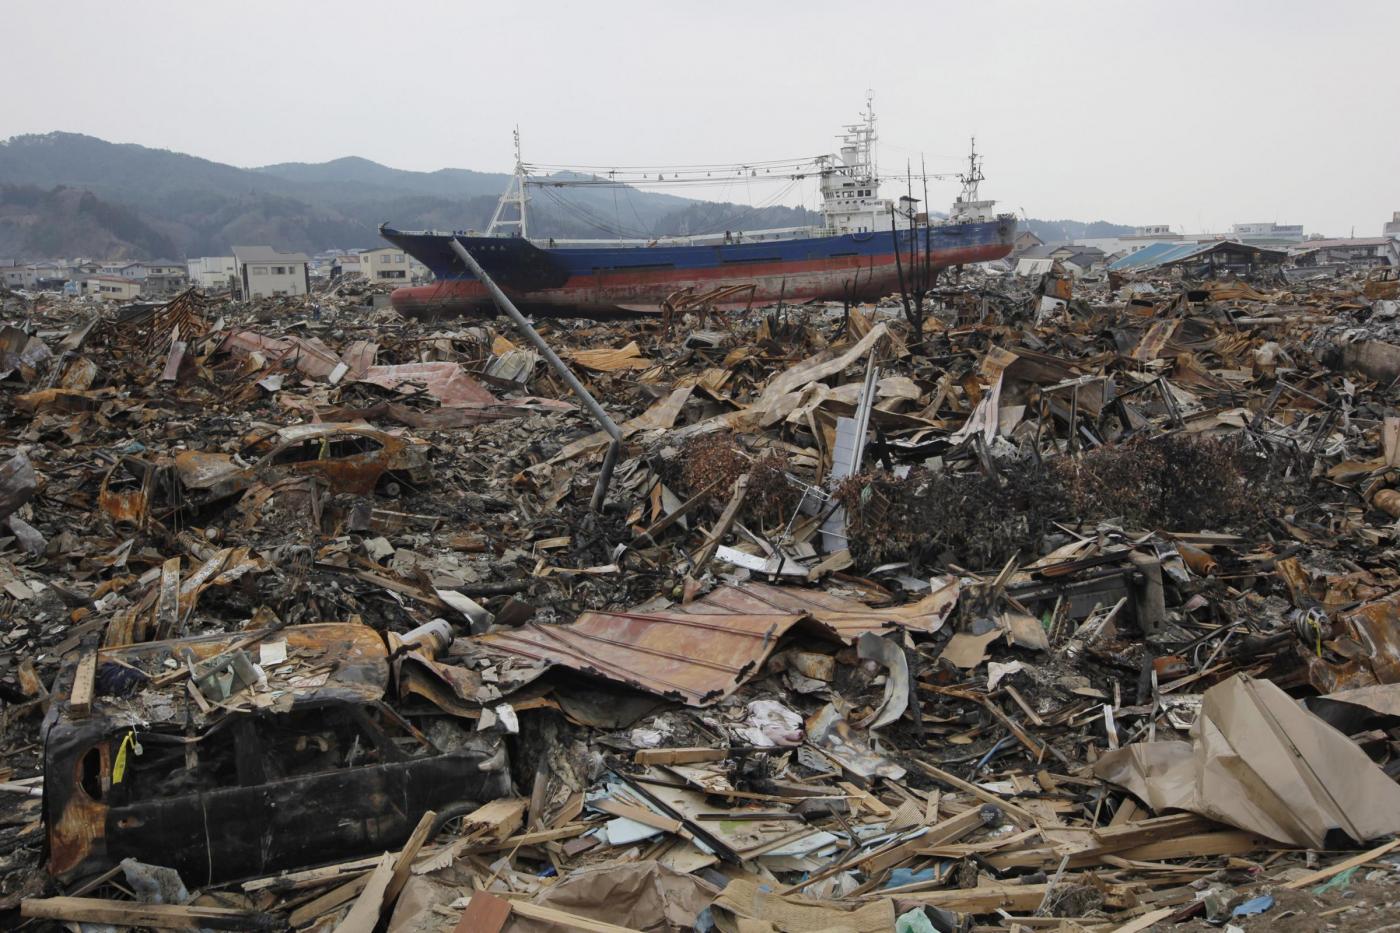 Giappone, la nave incagliata simbolo dello tsunami sarà demolita 02